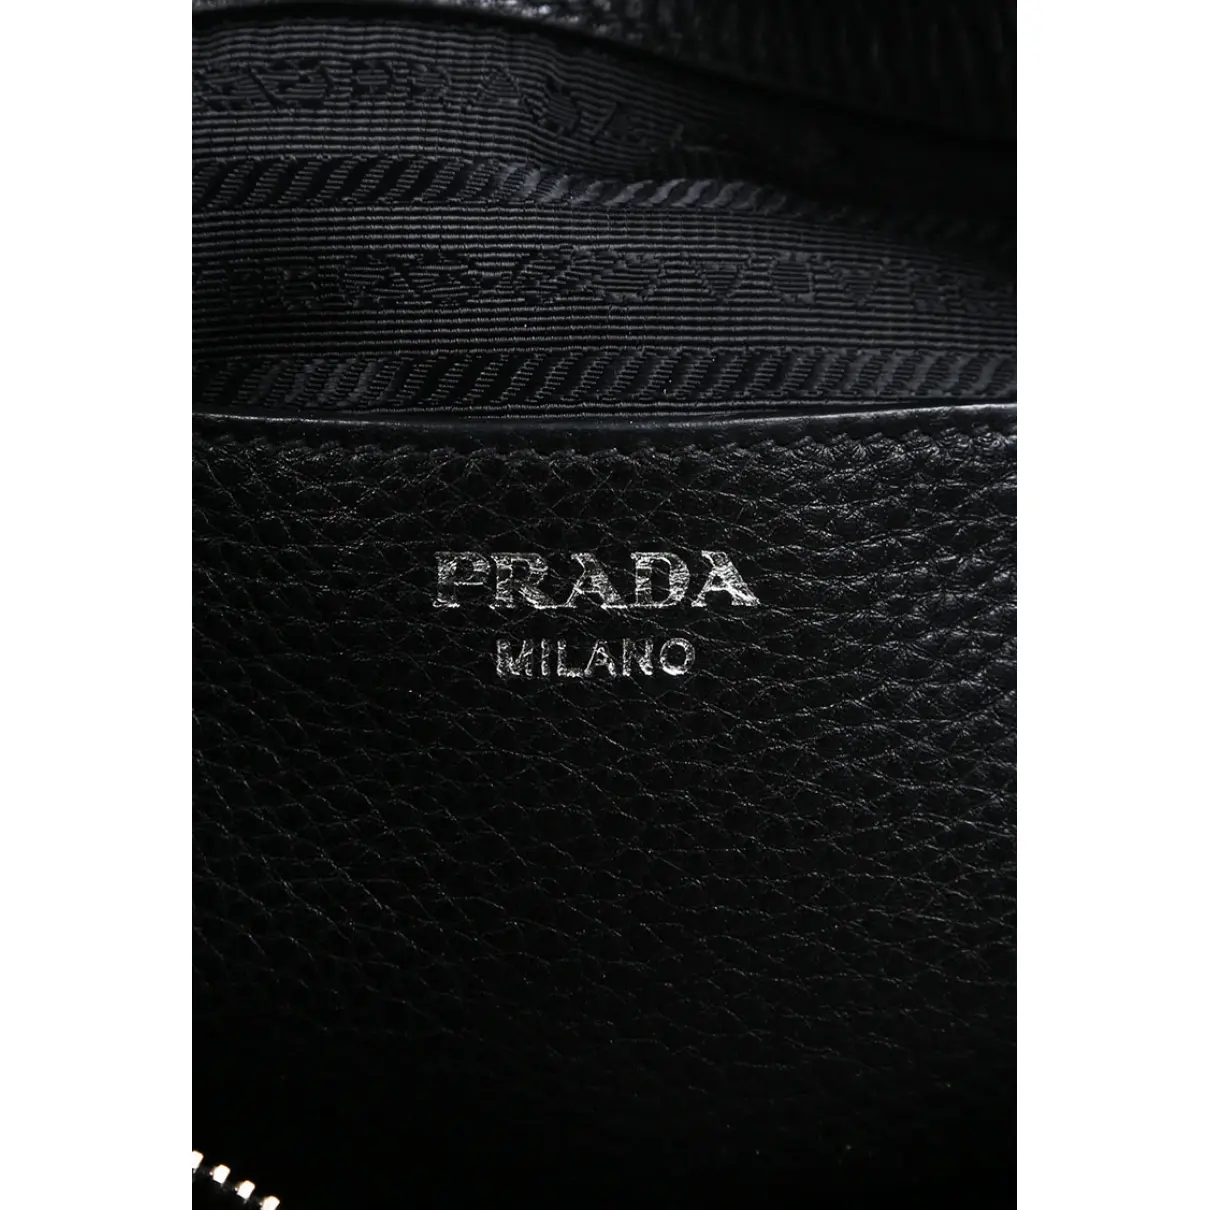 Leather shoulder bag Prada